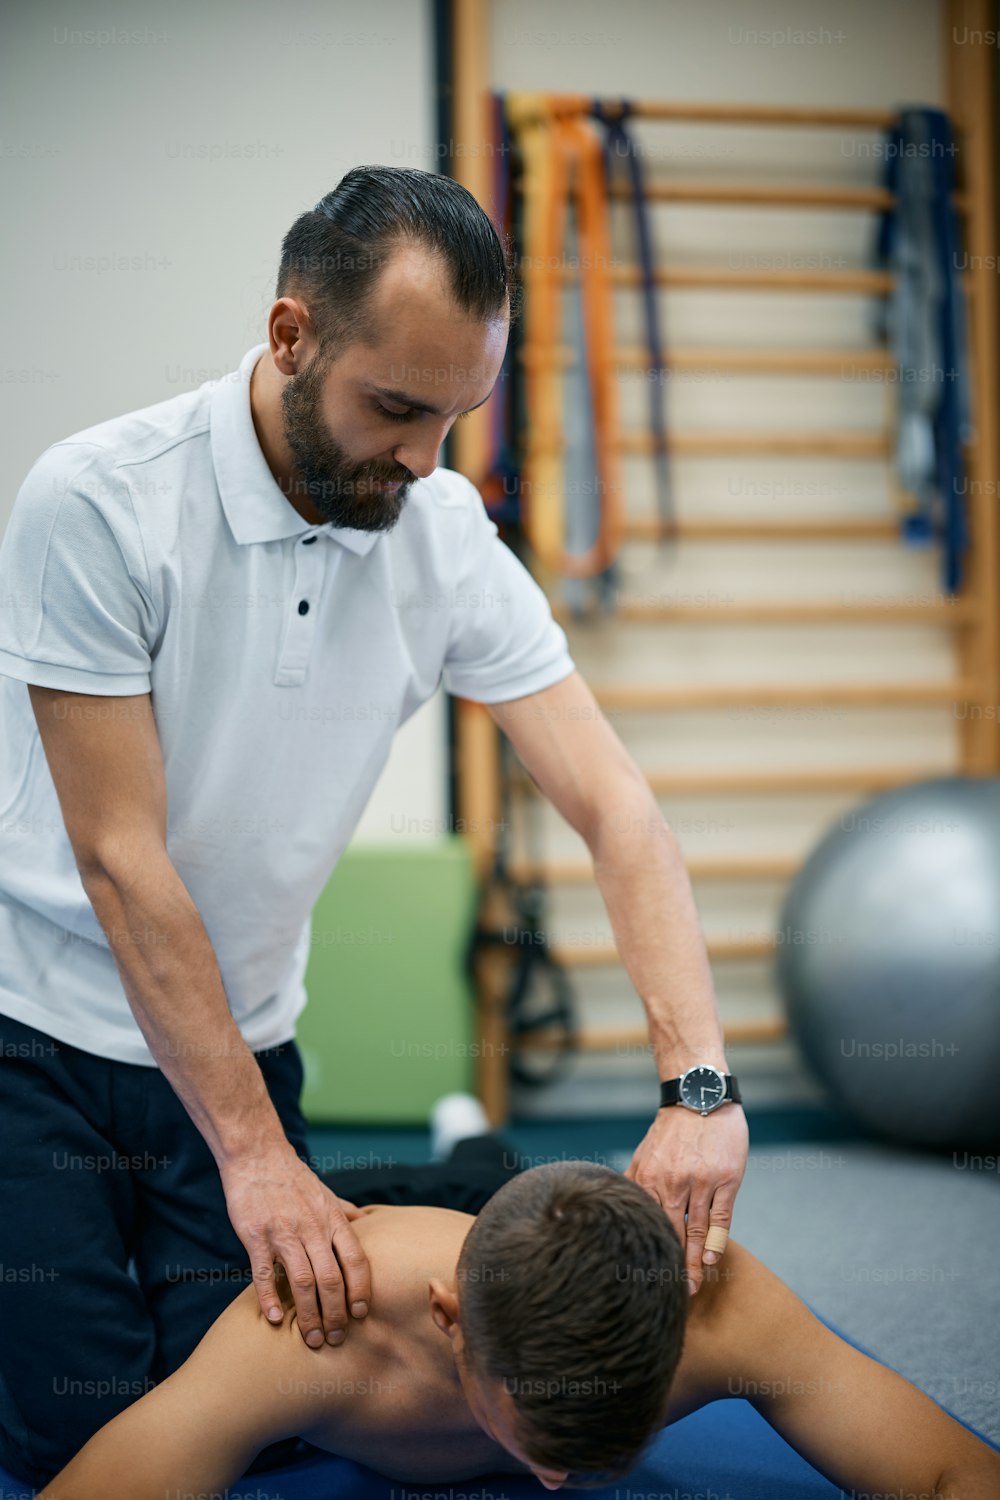 Kinésithérapeute donnant un massage des épaules à un homme athlétique lors d’un traitement de rééducation au club de santé.